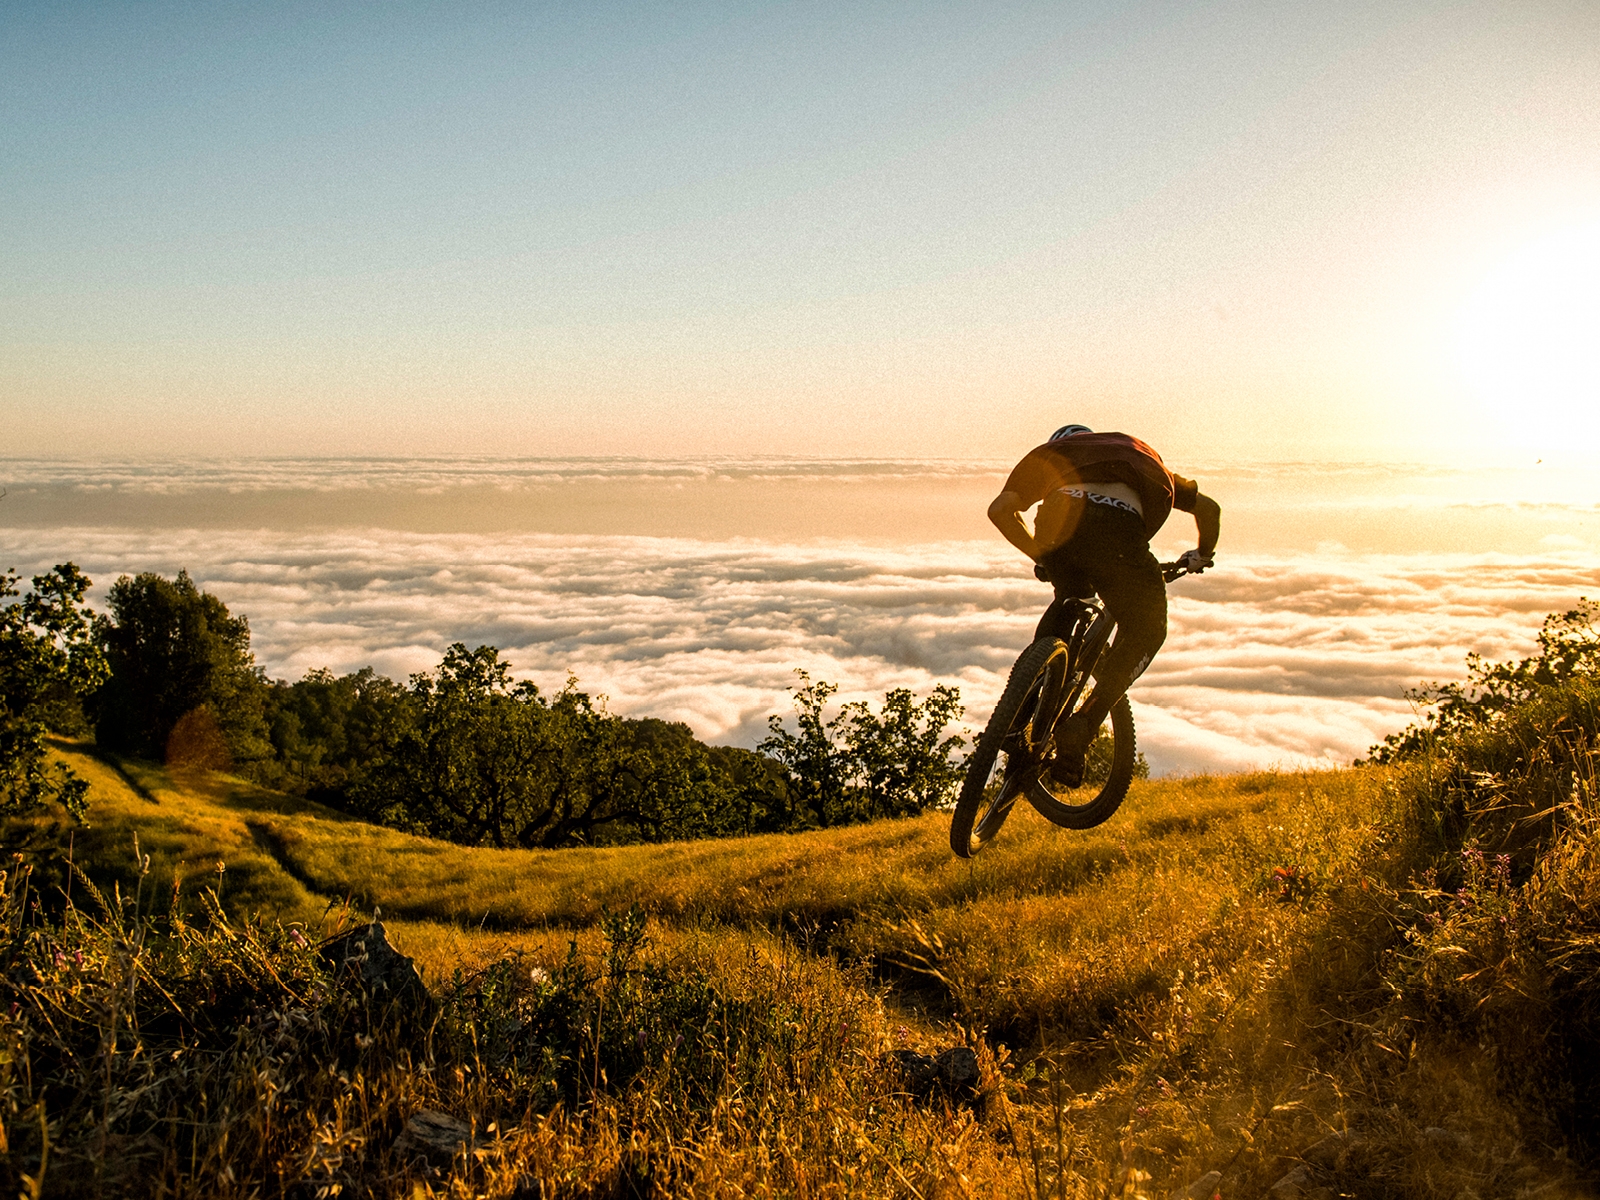 trek mountain bike brands